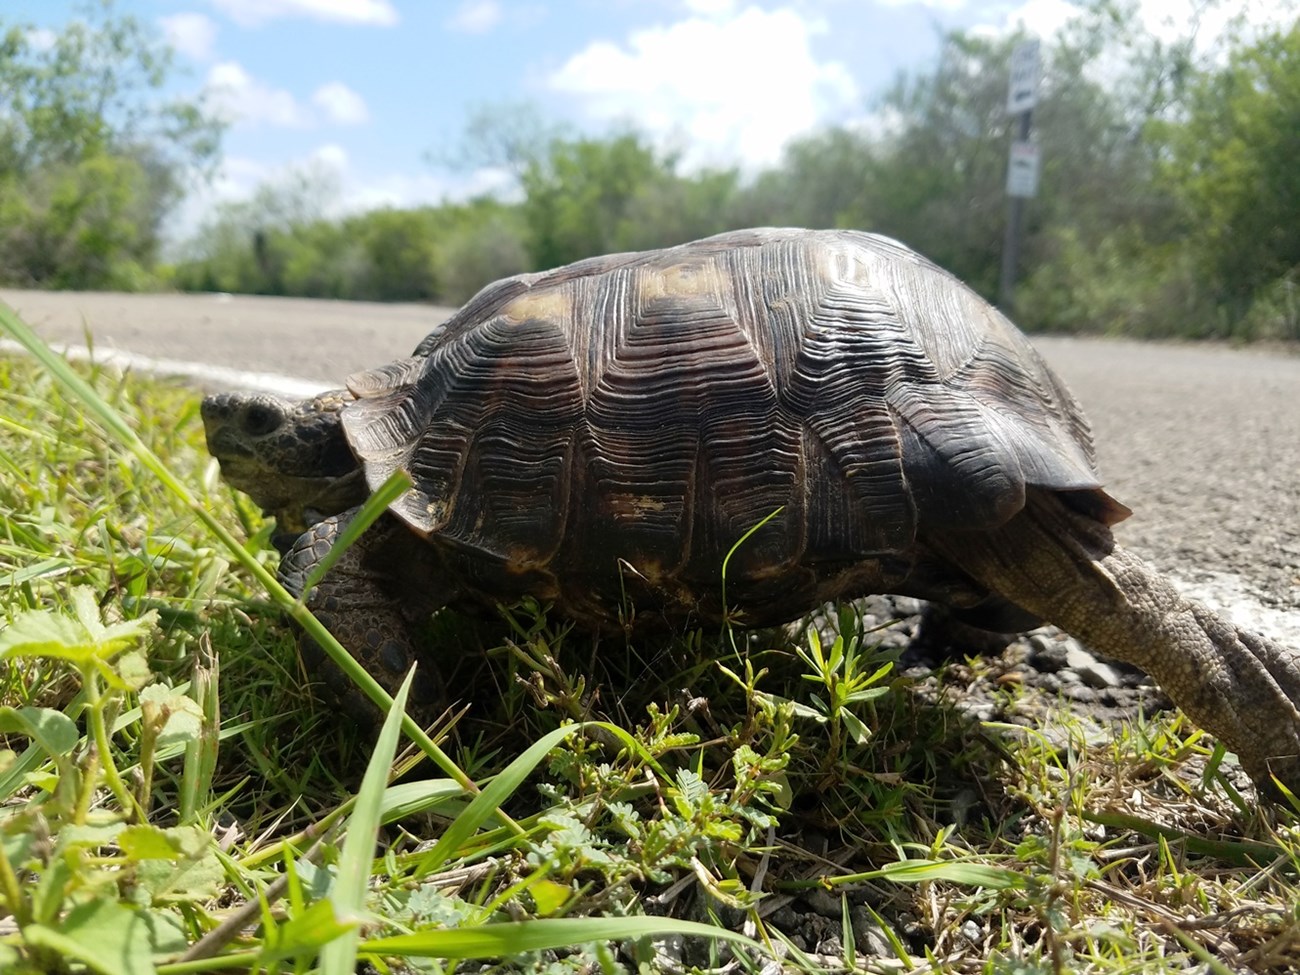 Texas tortoise walking through the grass.